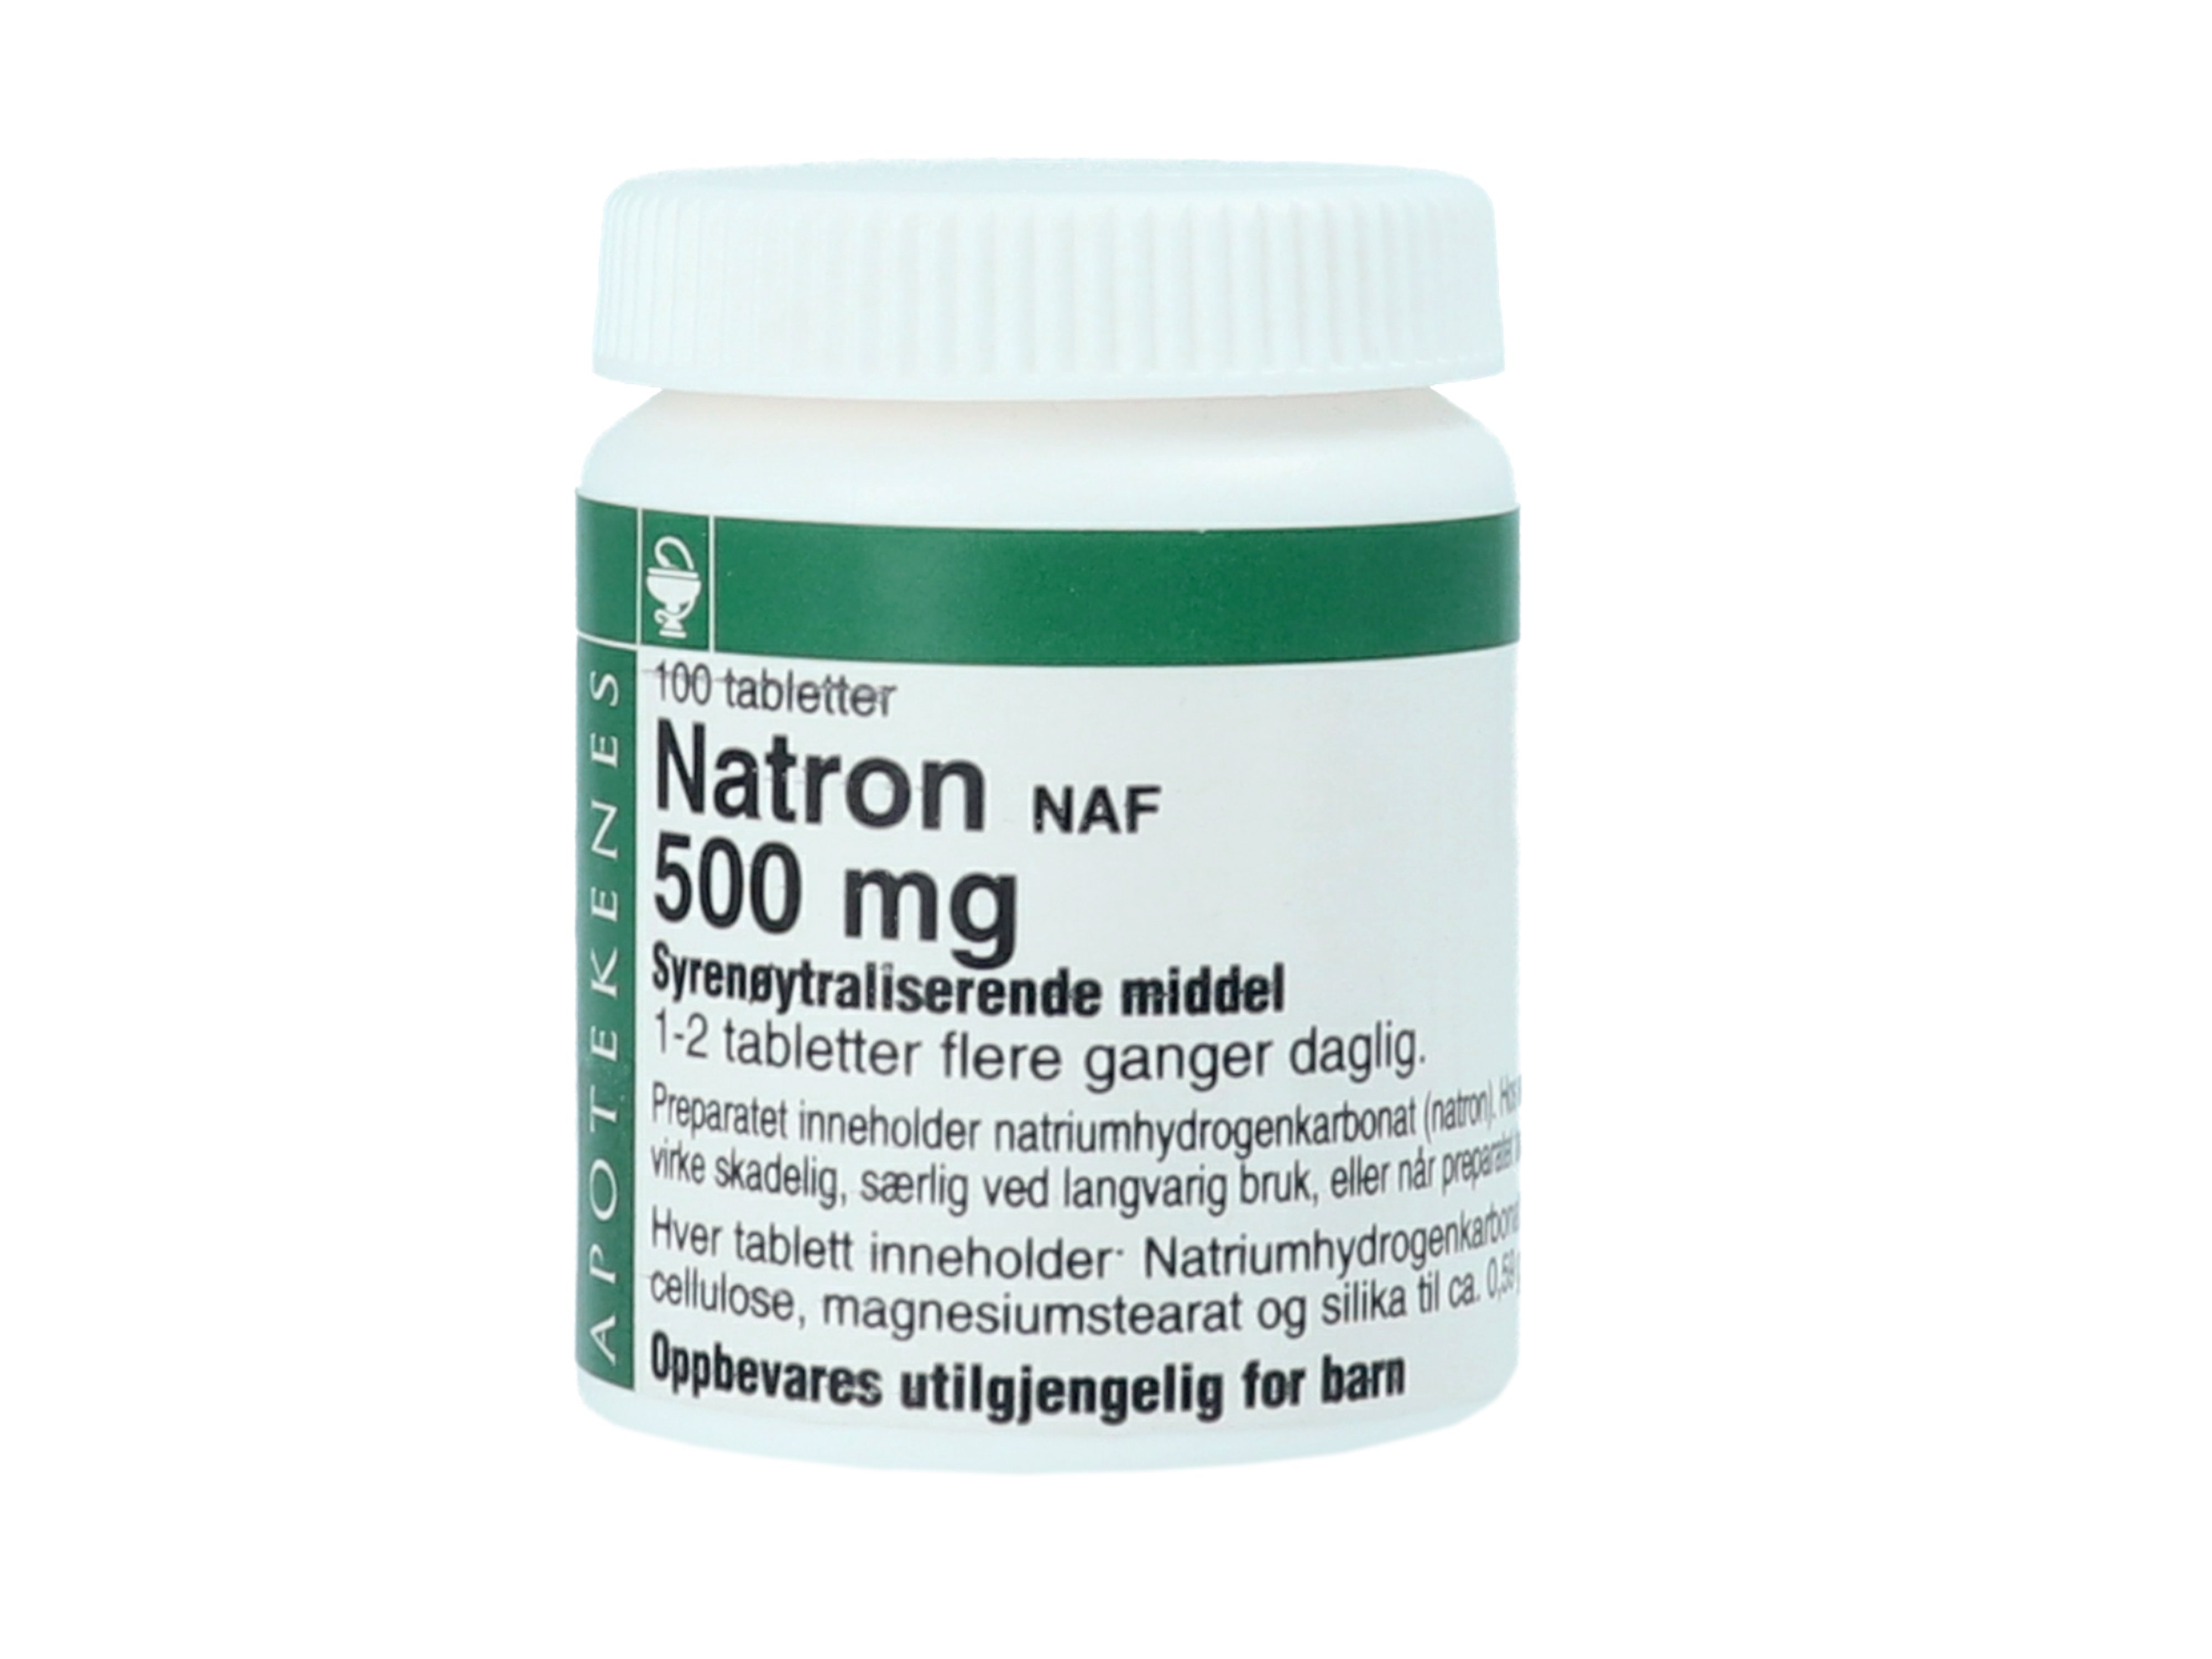 NAF Natron NAF tabletter 500mg, 100 stk.